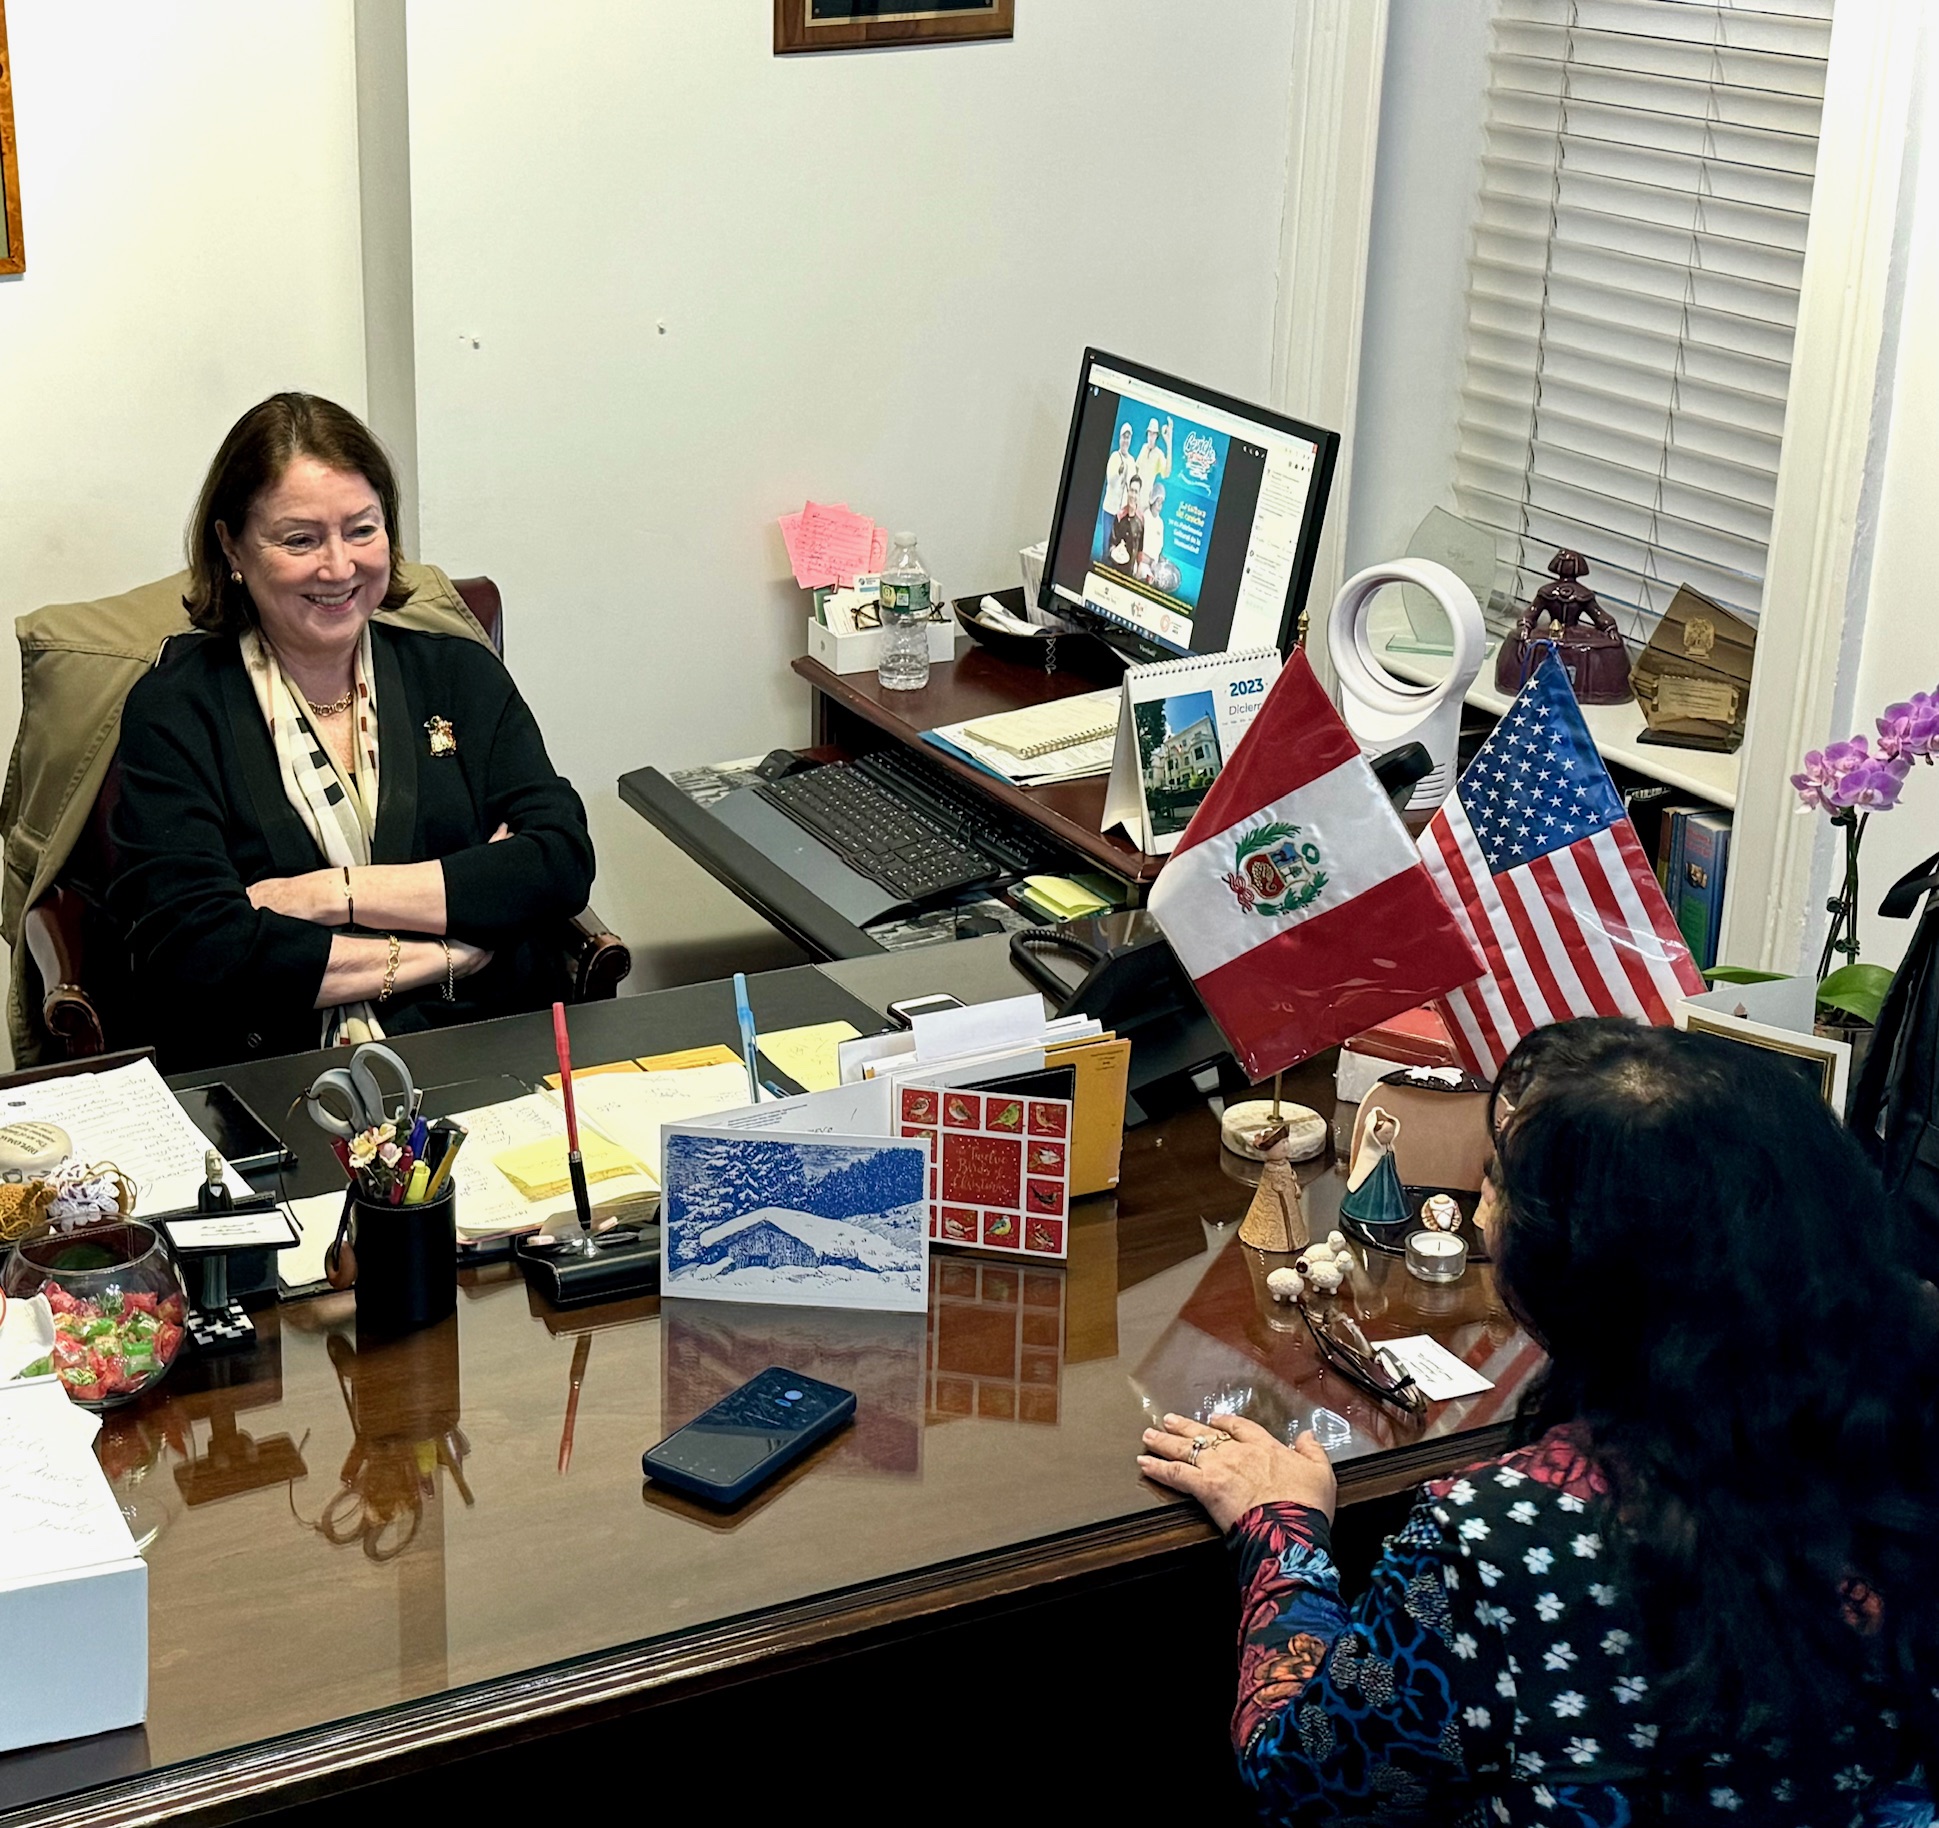 Marita Landaveri, Cónsul General de Perú en NY: “Siempre pido ceviche de entrada si voy a un restaurante peruano”